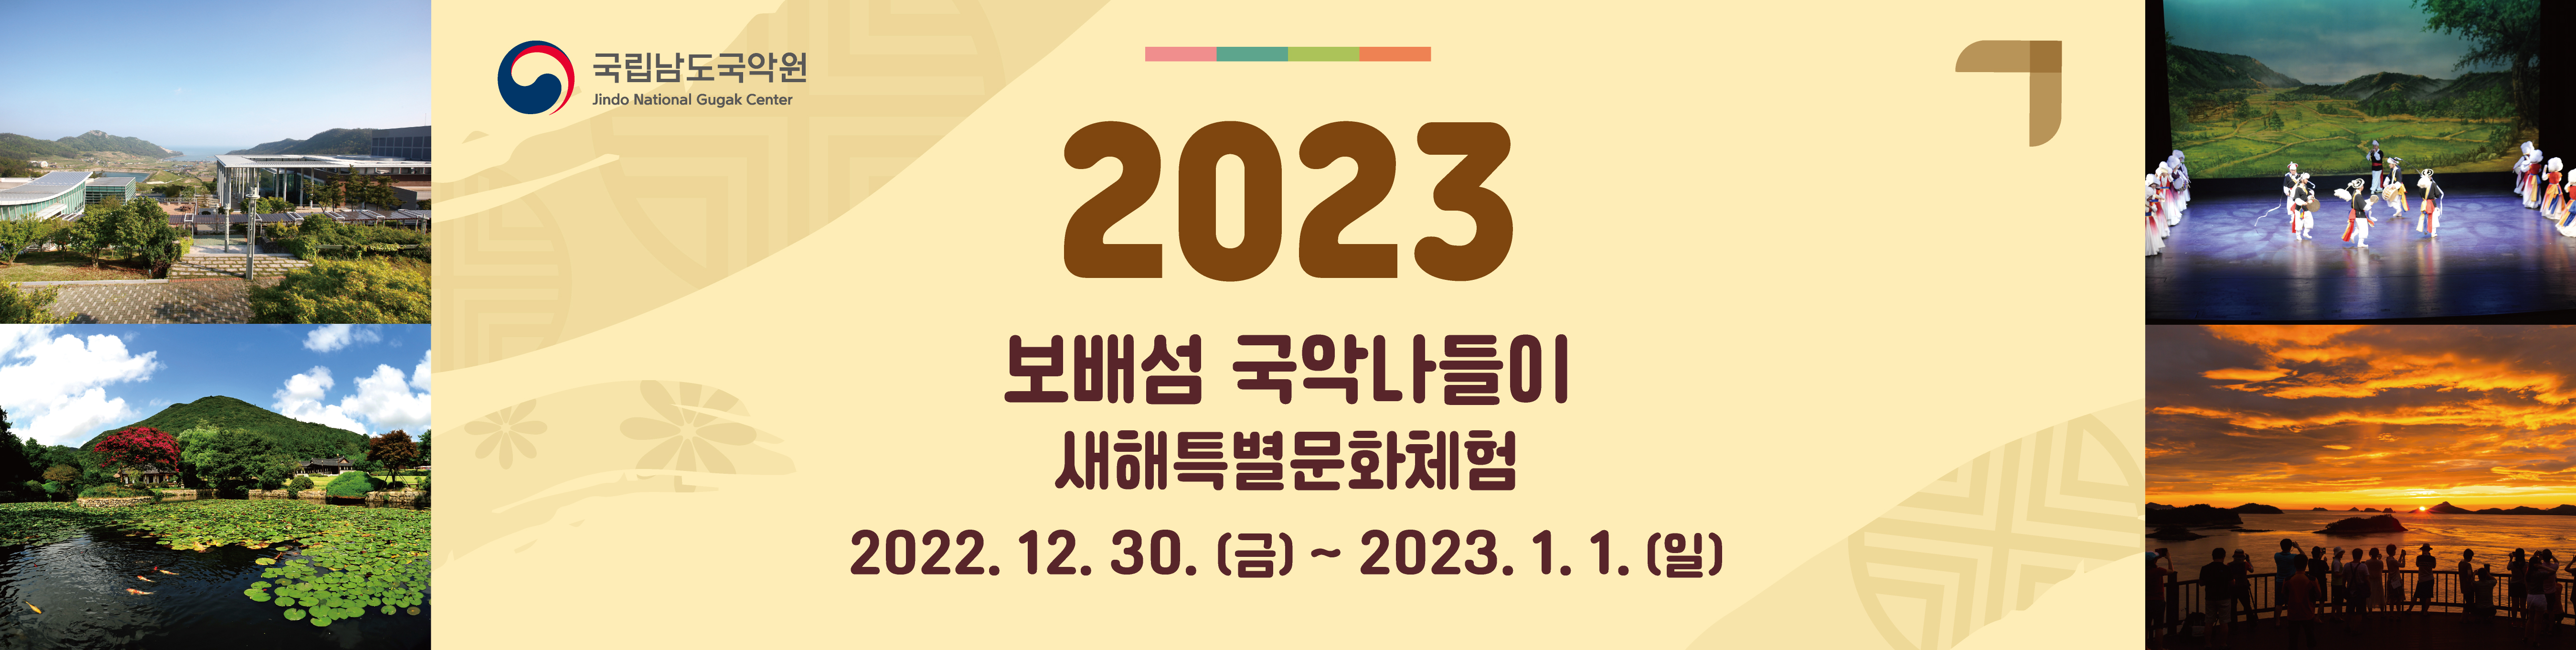 2023 새해맞이 특별